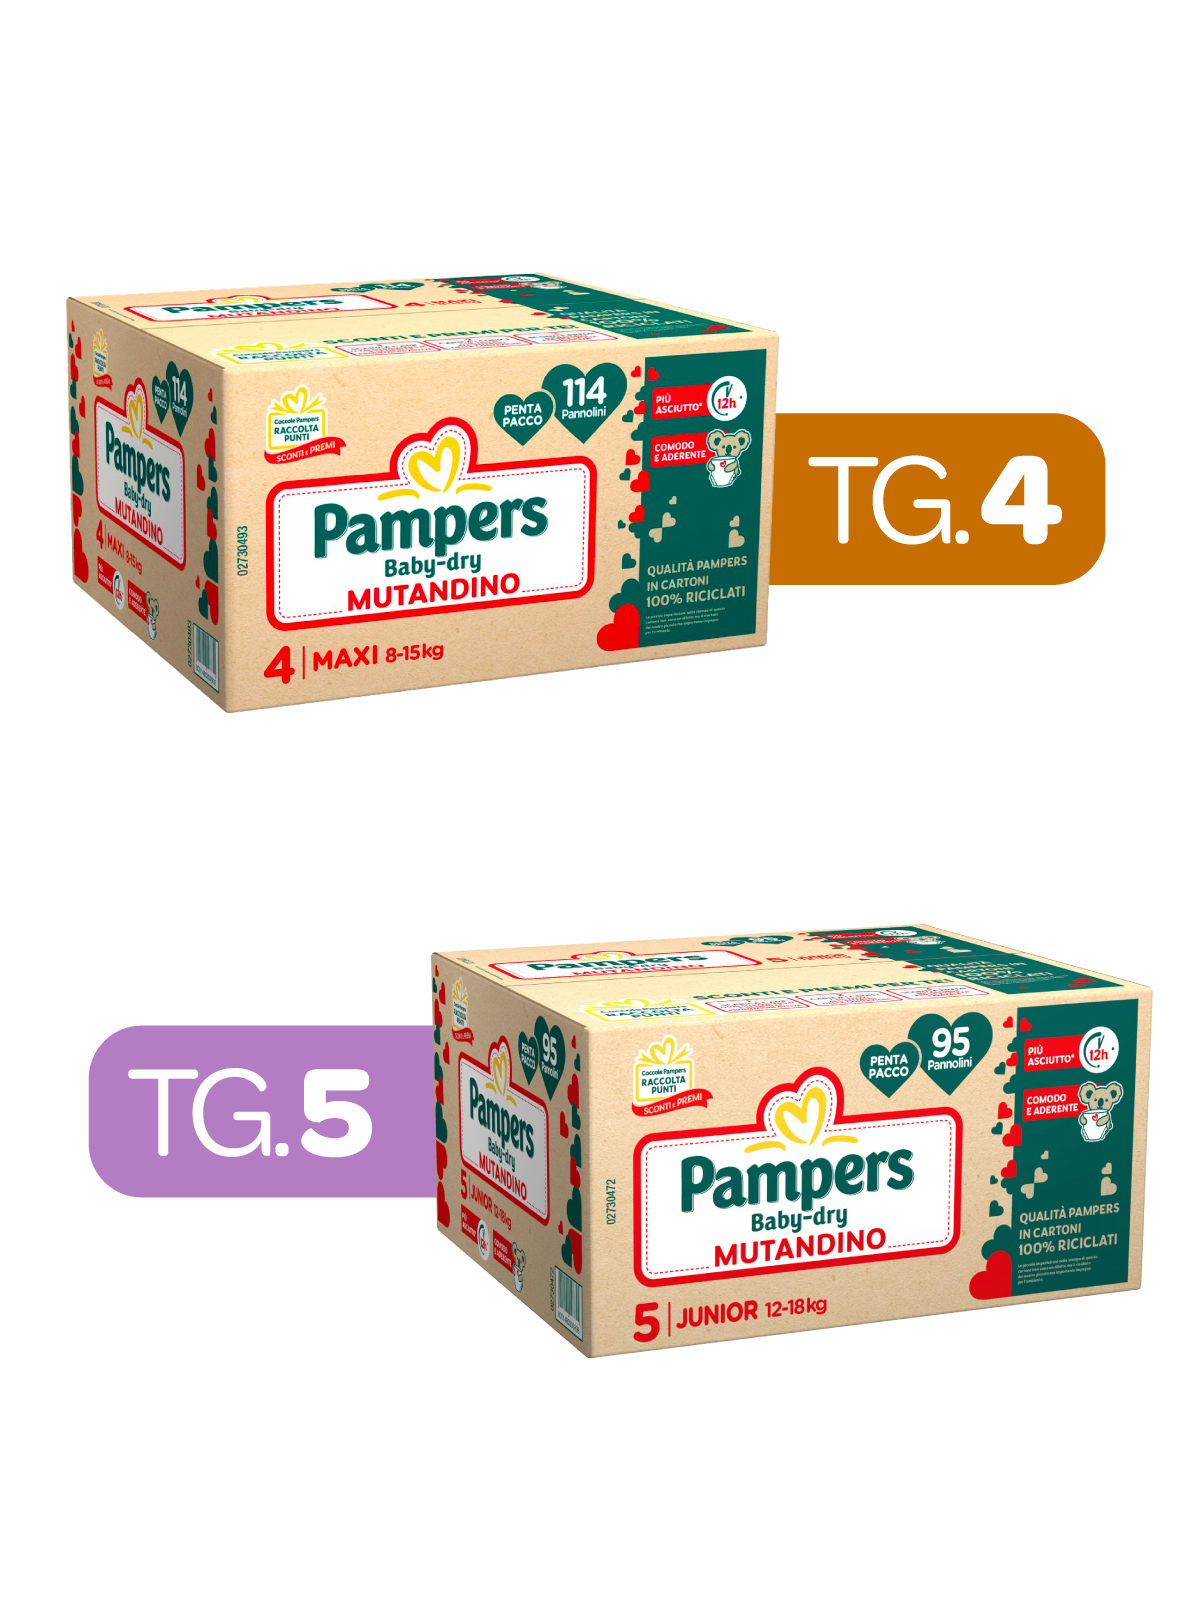 Pampers – baby dry mutandino tg. 4 x114 pz + mutandino baby dry tg. 5 x95 pz - 